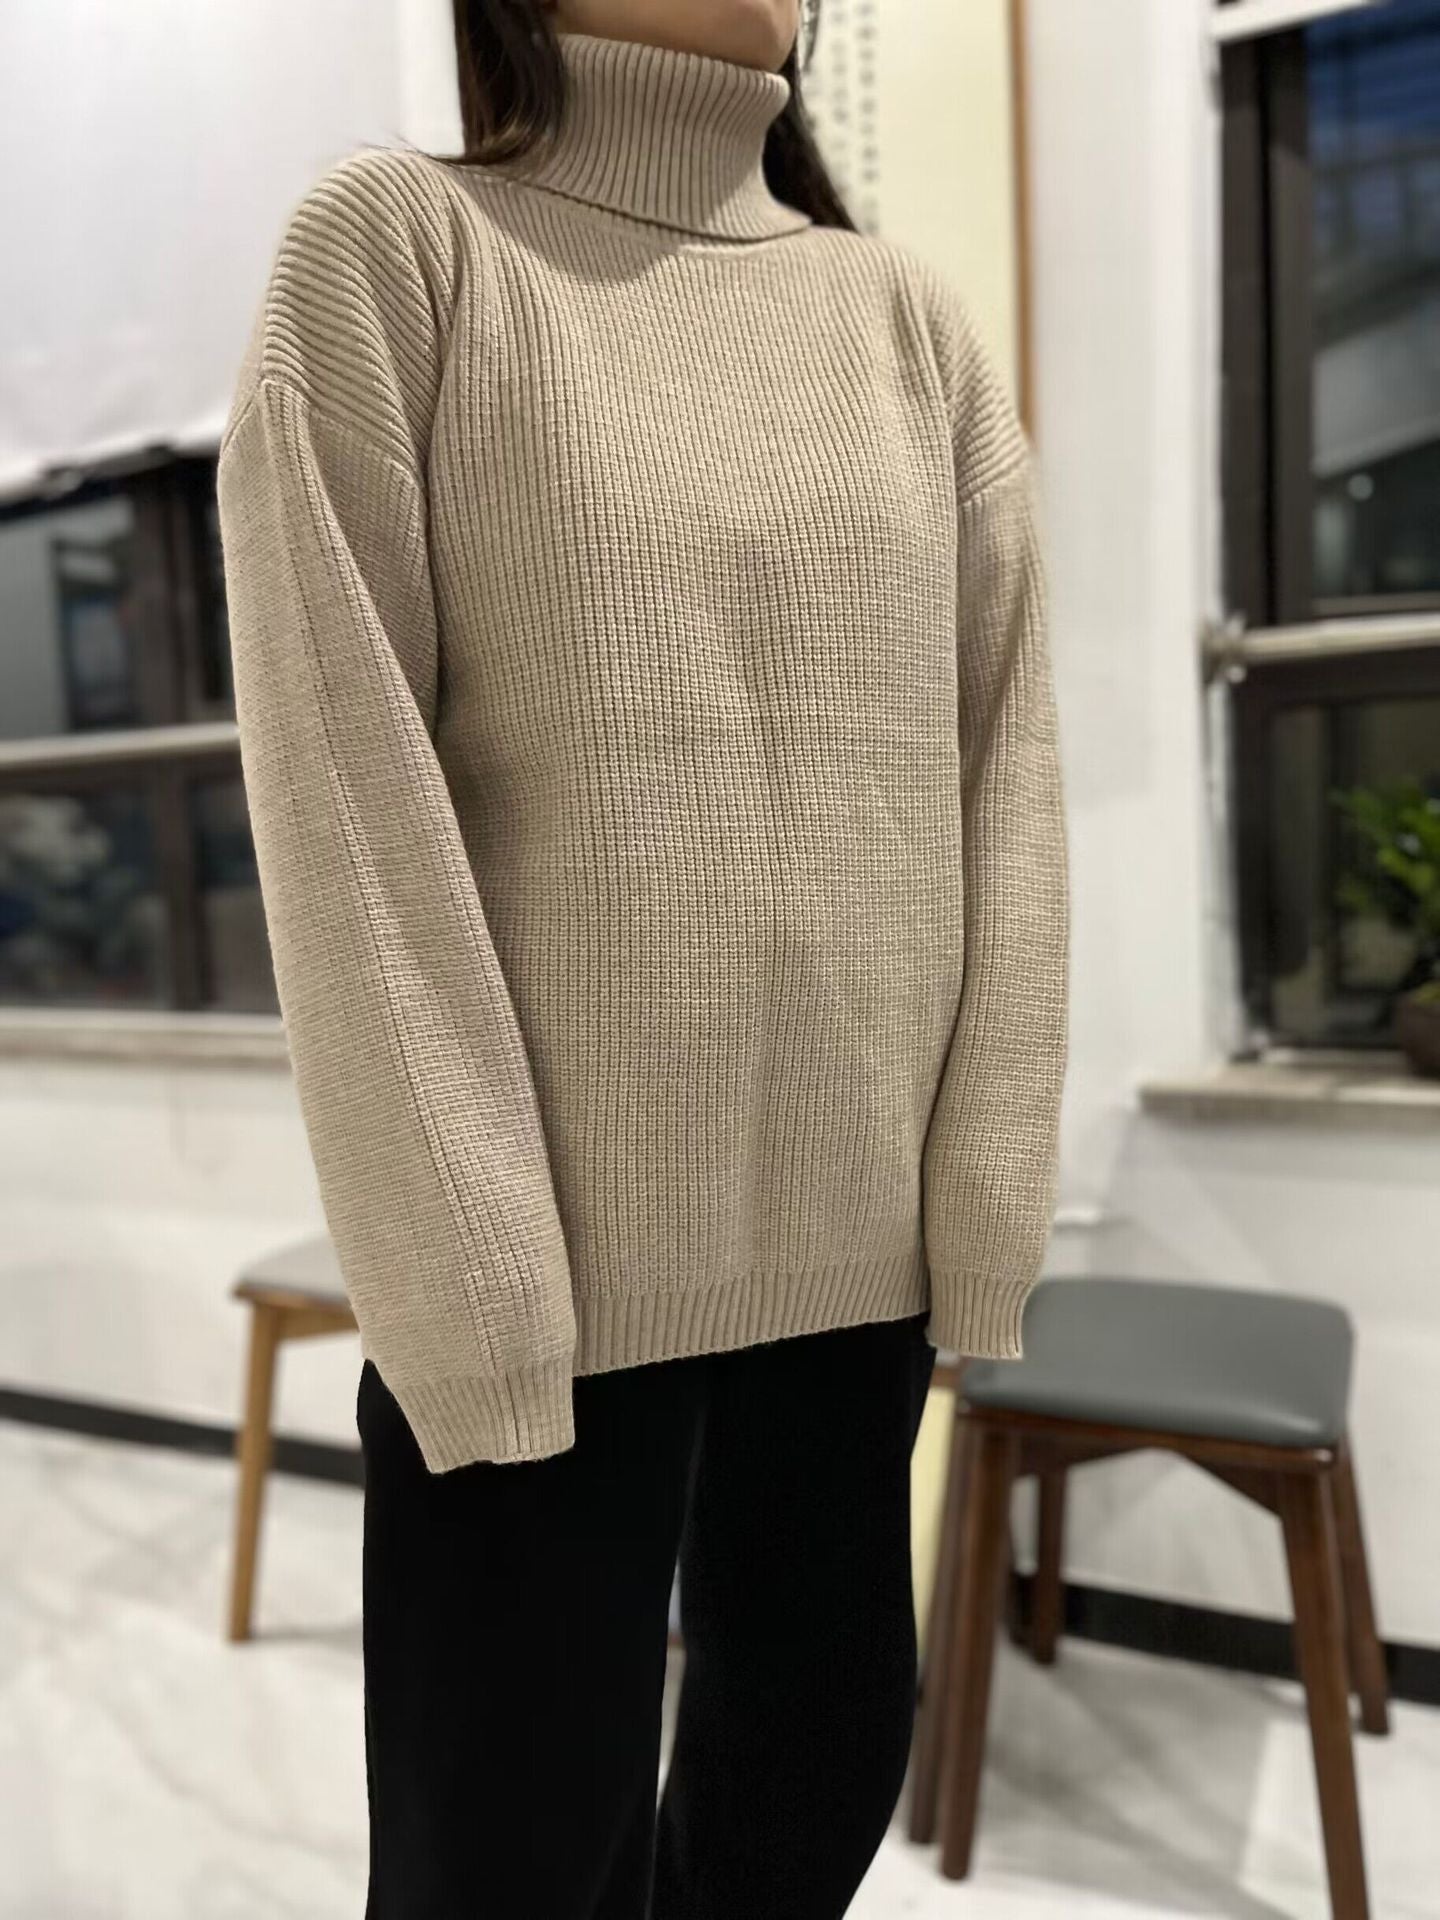 Autumn Winter Sweater Pullover Loose Casual Turtleneck Sweater Popular